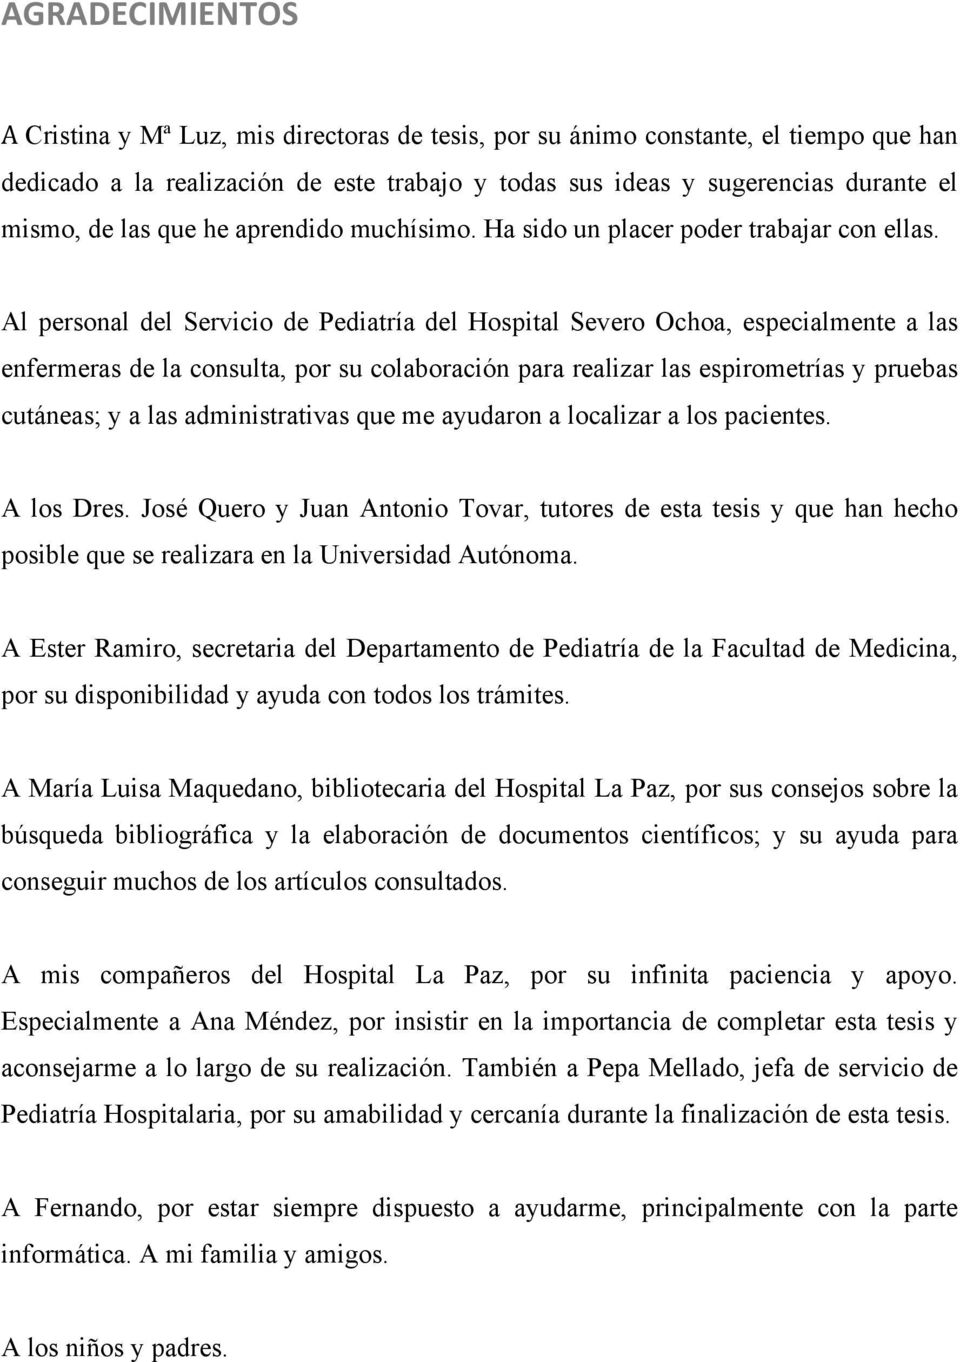 Al personal del Servicio de Pediatría del Hospital Severo Ochoa, especialmente a las enfermeras de la consulta, por su colaboración para realizar las espirometrías y pruebas cutáneas; y a las